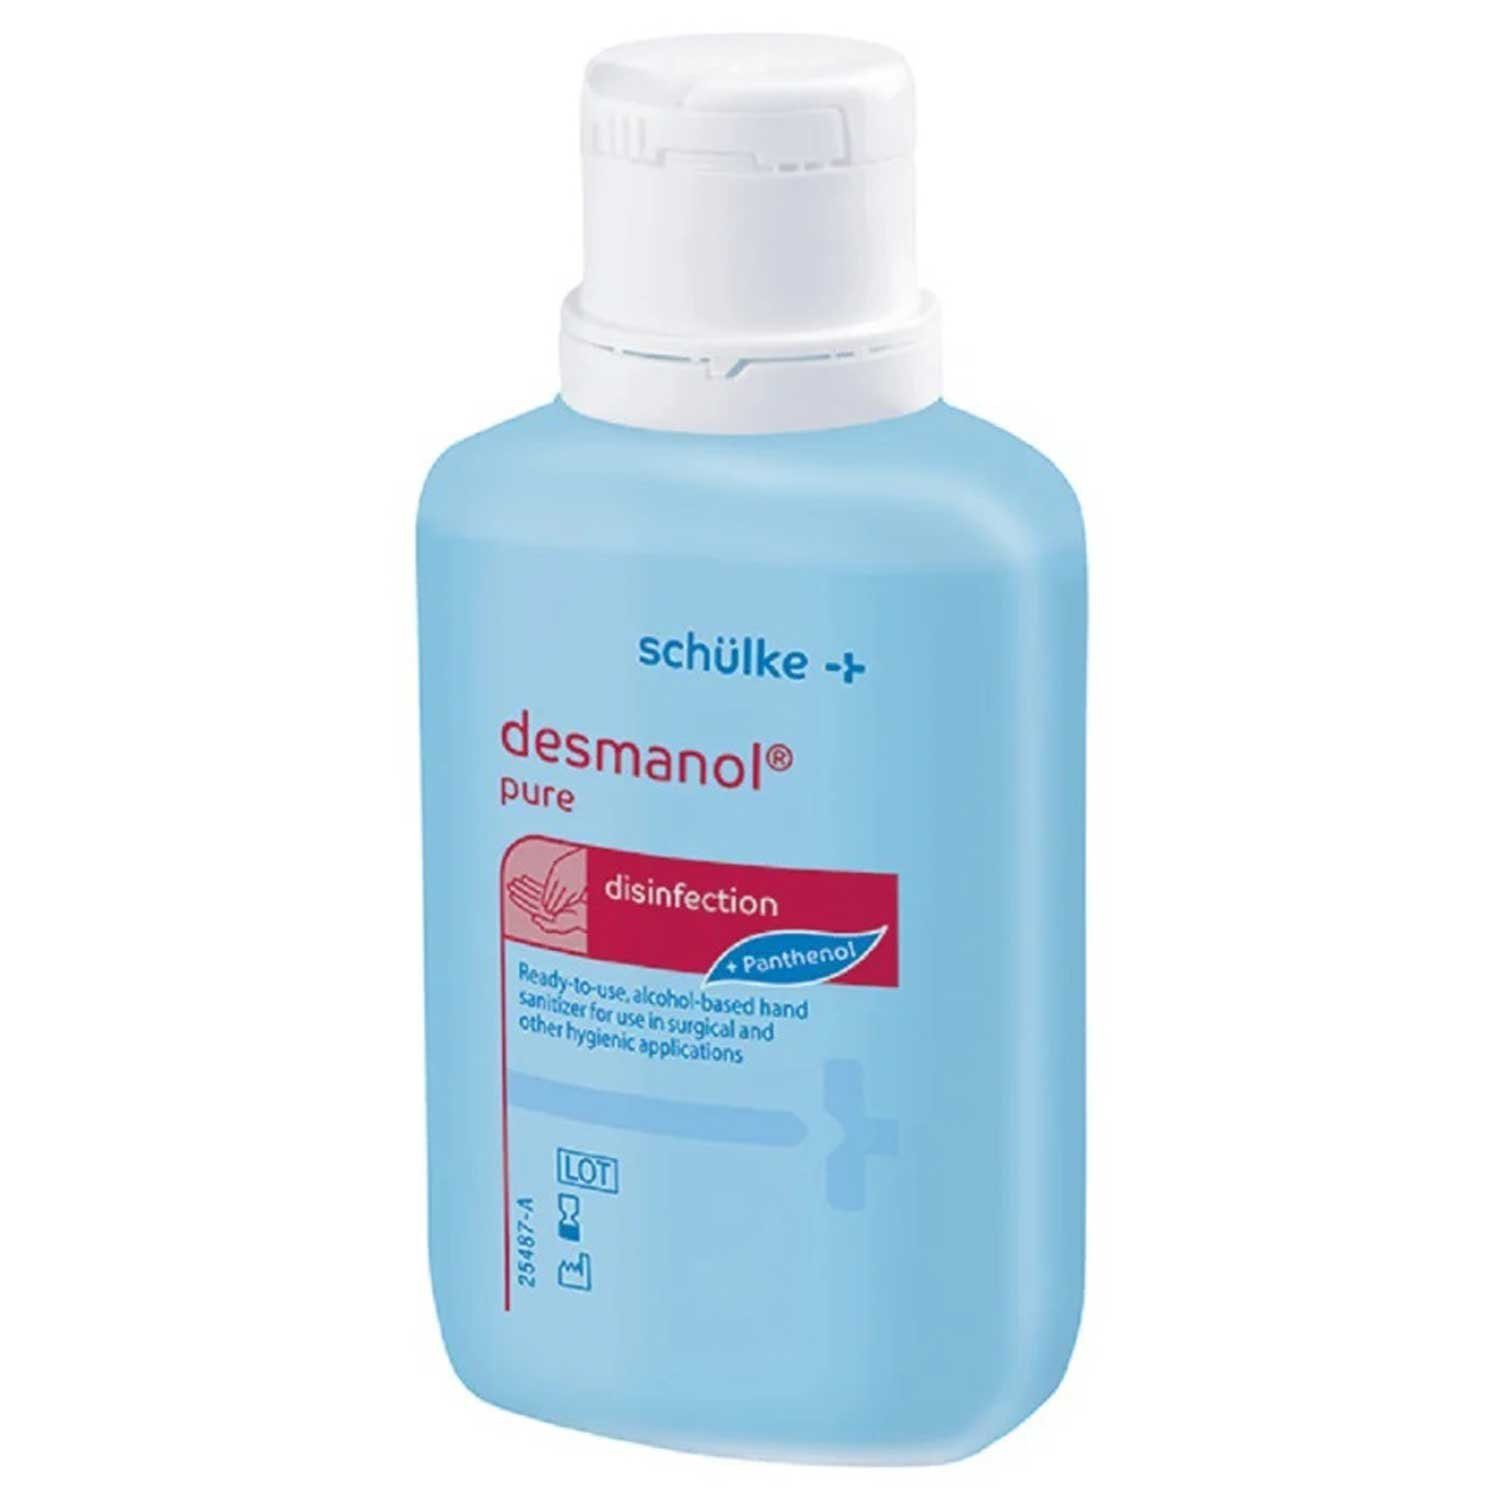 Bode Chemie Desmanol pure 100 ml Hand-Desinfektionsmittel (Alkoholisches Desinfektionmittel zur hygienischen und chirurgischen Händedesinfektion, [1-St. 100 g Lösung enthält an wirksamen Bestandteilen: 75 g Propan-2-ol)